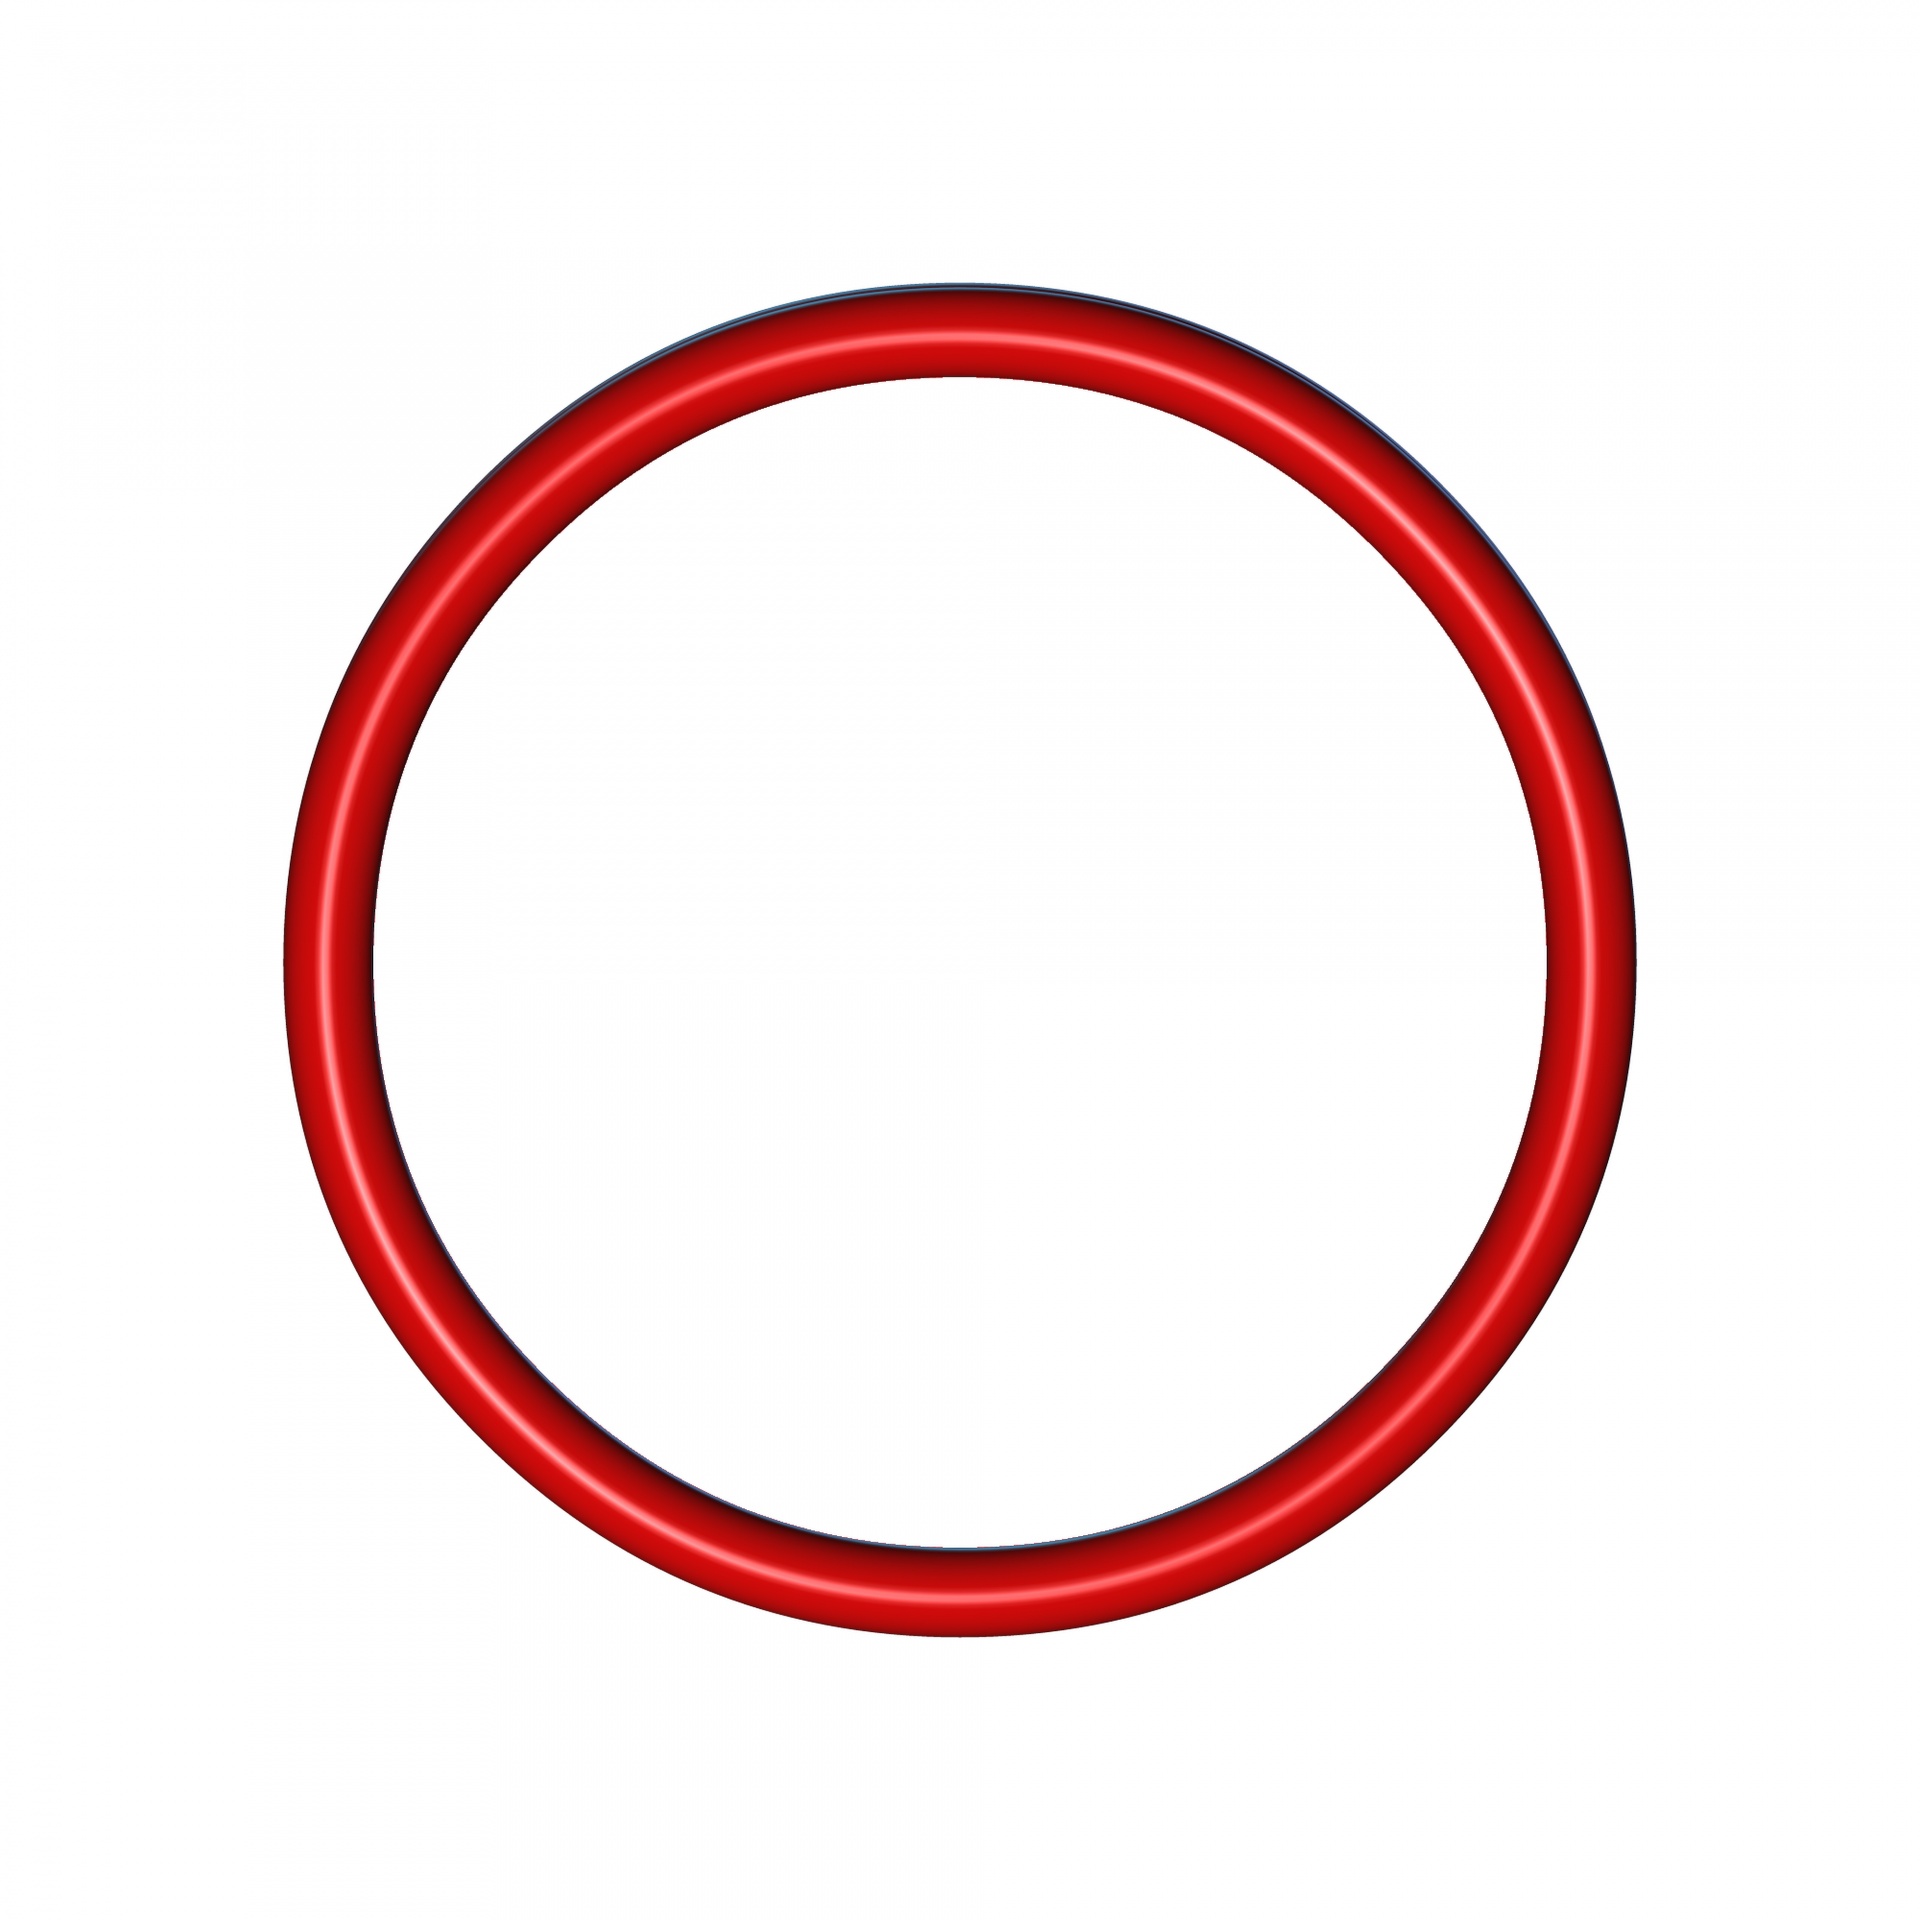 Круг на прозрачном фоне картинки для детей. Красный кружок. Круг без фона. Красный кружок на прозрачном фоне. Красный круг на прозрачном фоне.